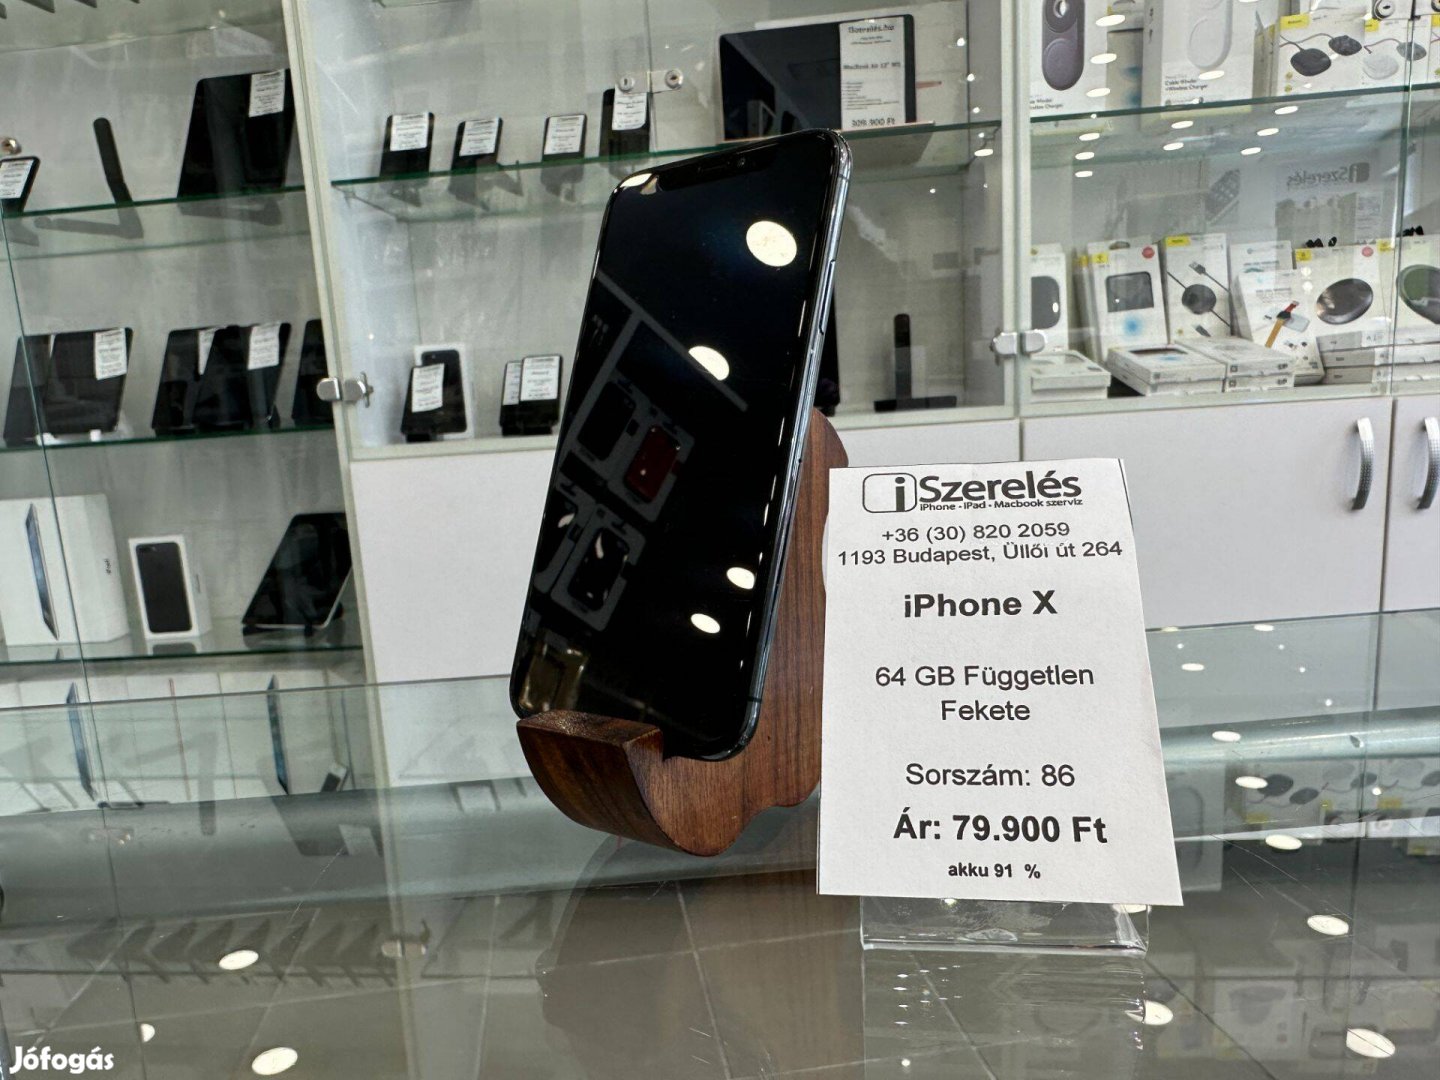 Iphone X 64gb független fekete akku 91% garanciával (86) iszerelés.hu